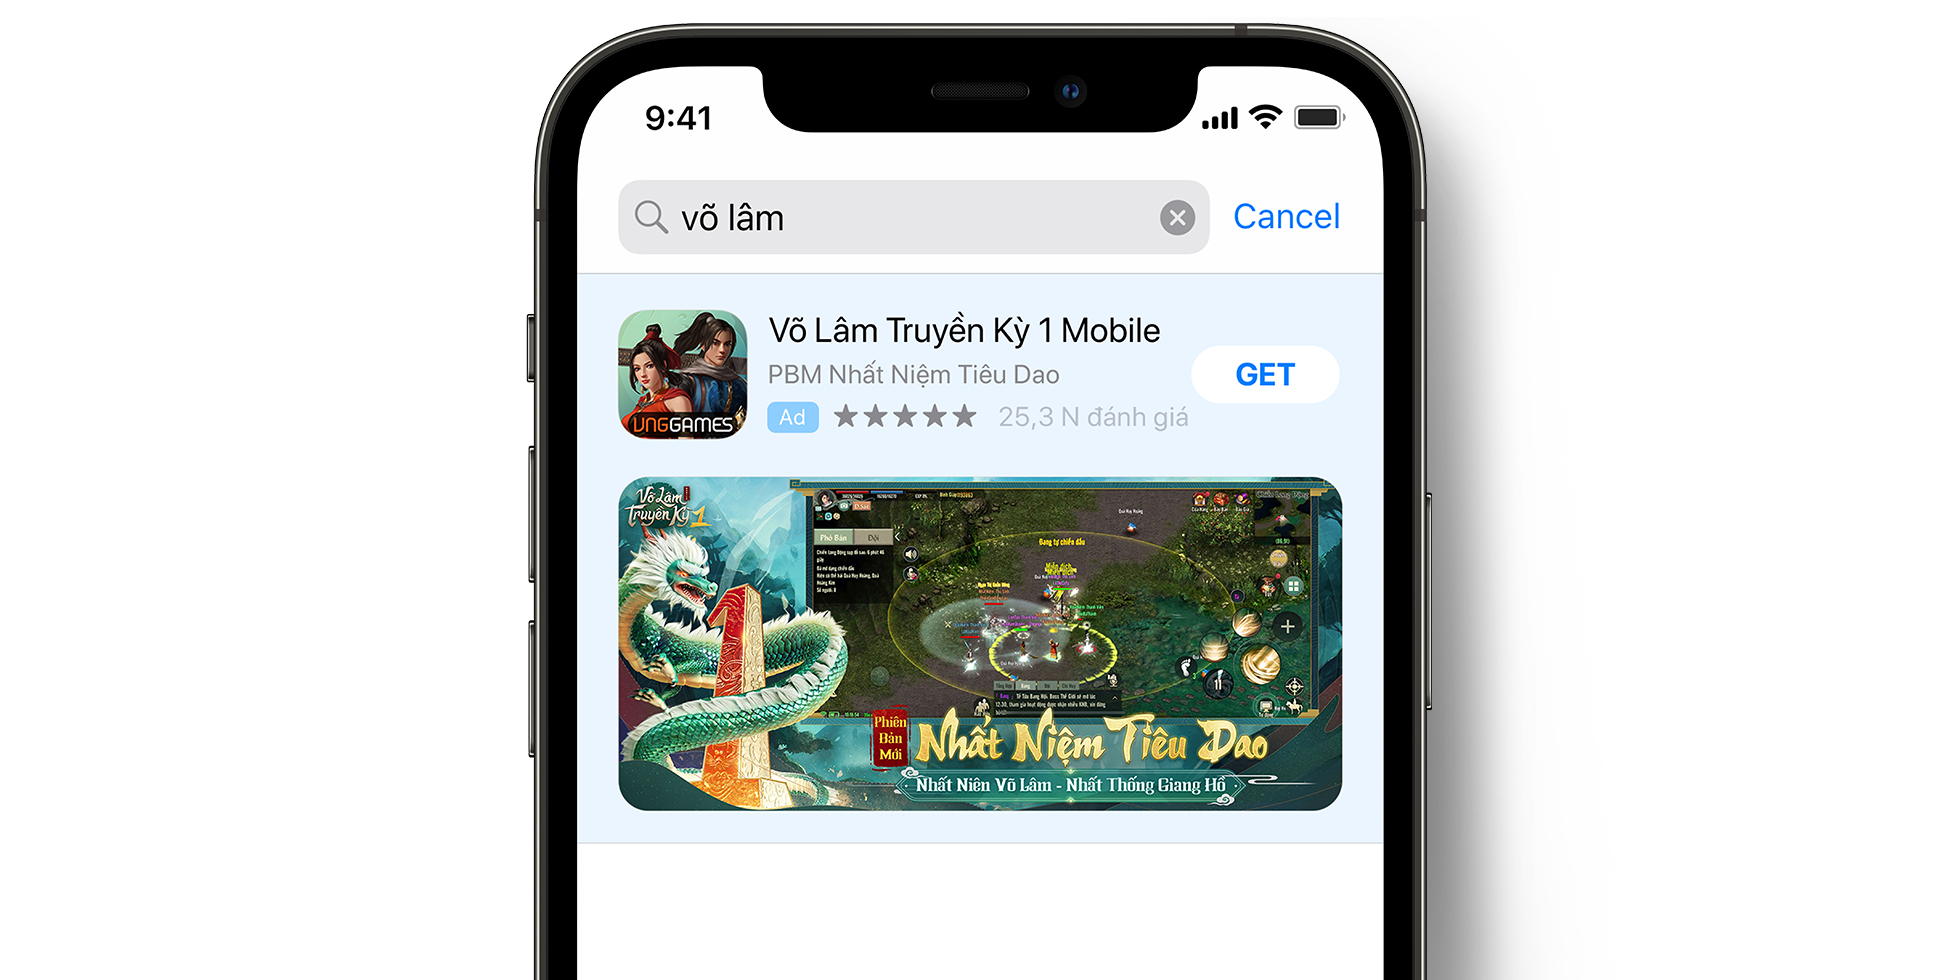 VLTK 1 Mobile-Anzeige im App Store